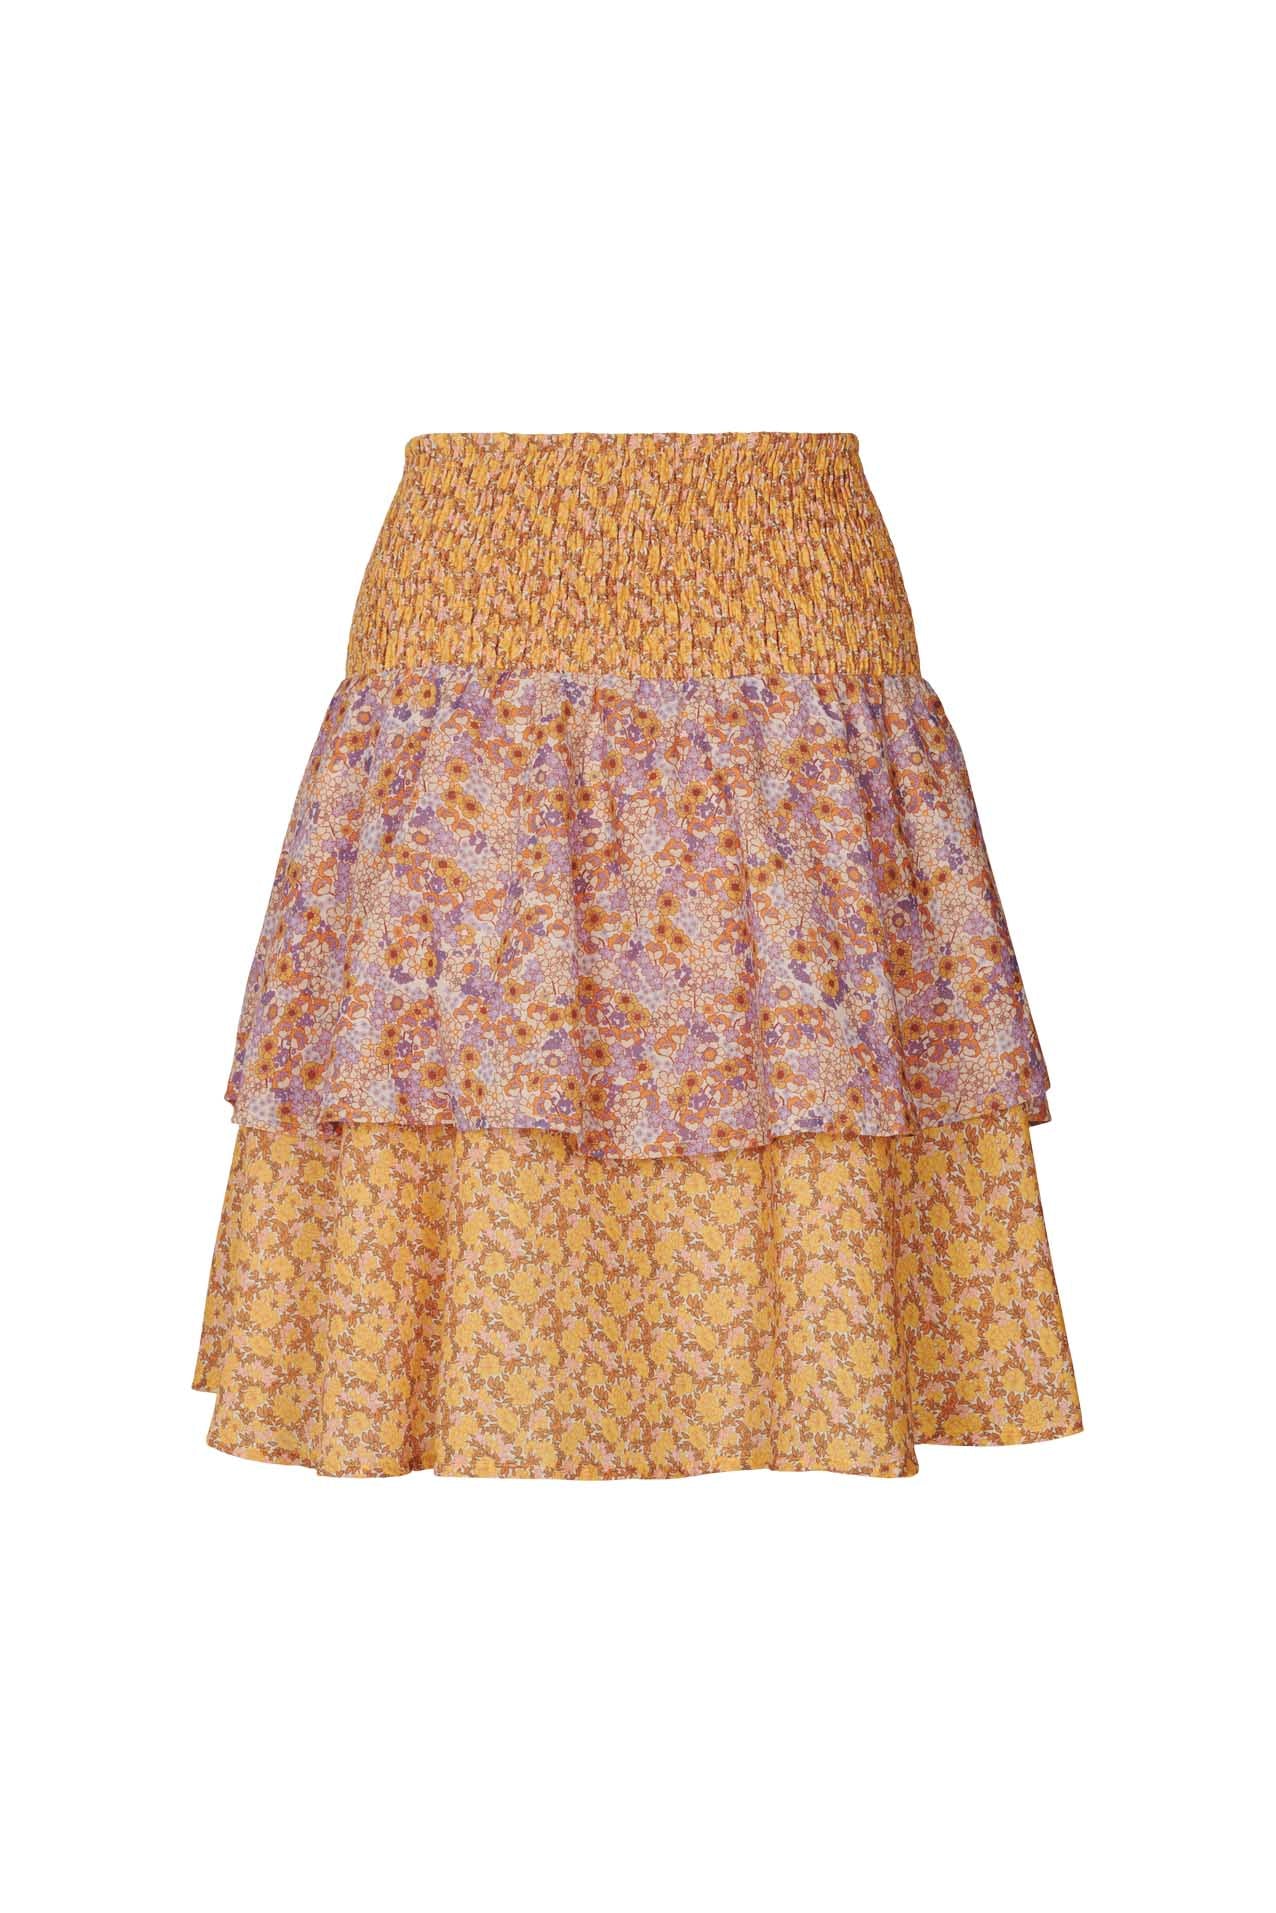 Lollys Laundry Magda Skirt Skirt 70 Multi